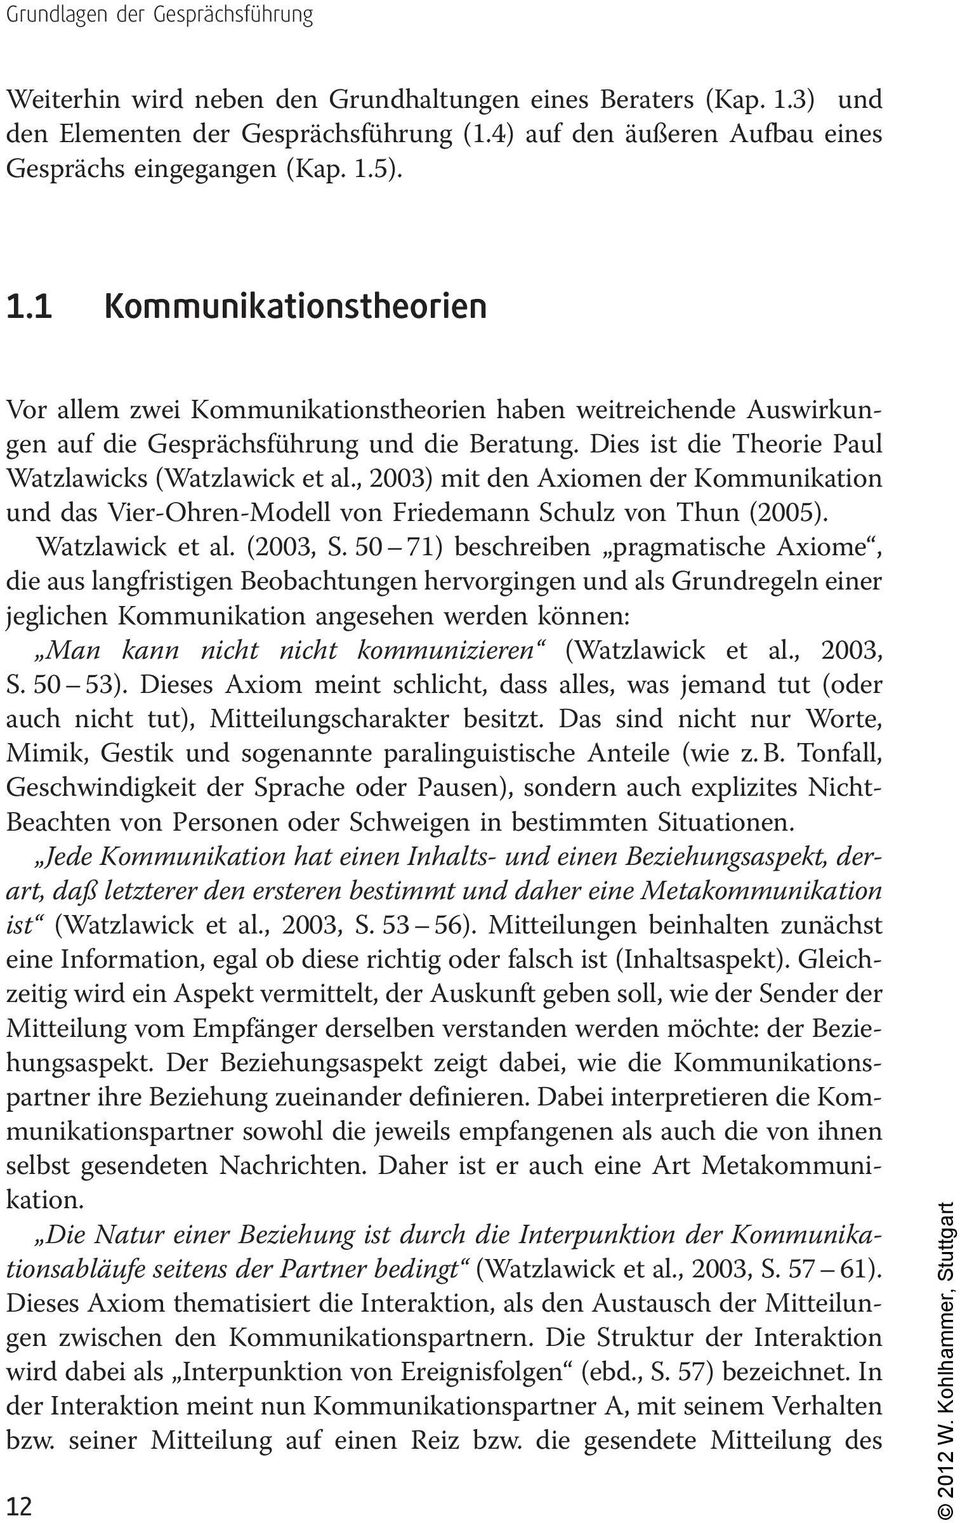 Dies ist die Theorie Paul Watzlawicks (Watzlawick et al., 2003) mit den Axiomen der Kommunikation und das Vier-Ohren-Modell von Friedemann Schulz von Thun (2005). Watzlawick et al. (2003, S.